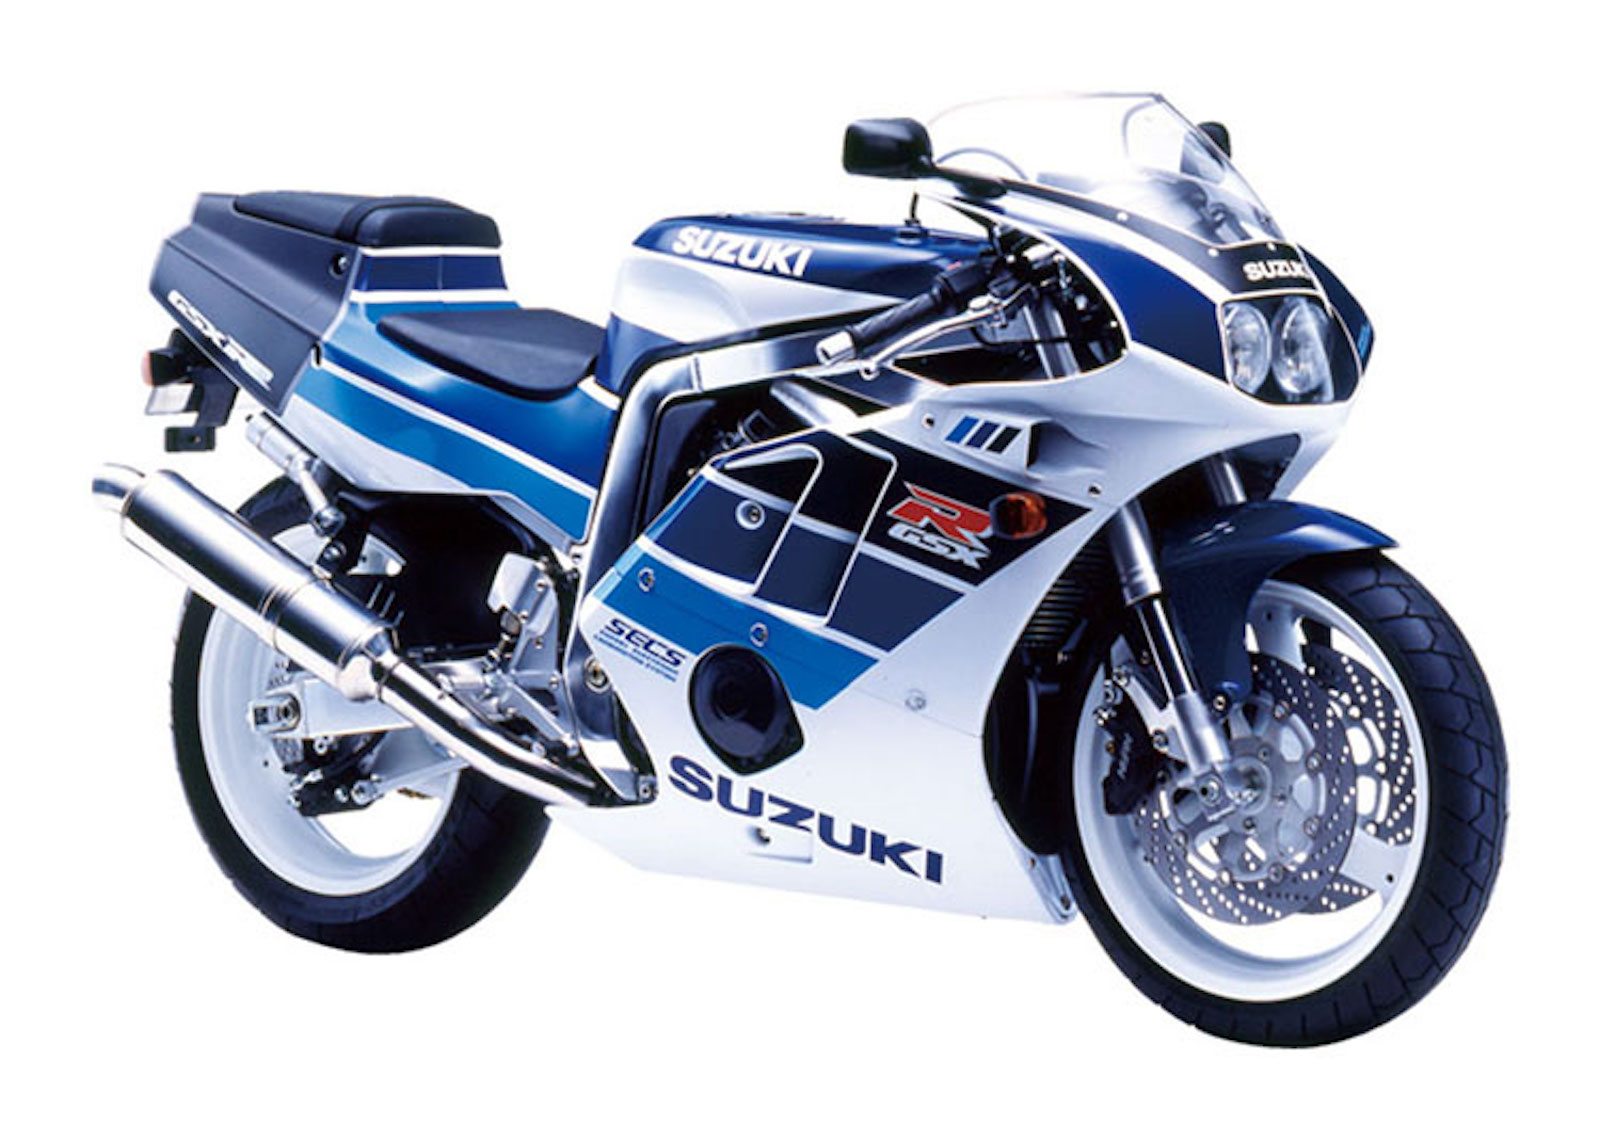 Suzuki's GSX-R: the full history | Visordown